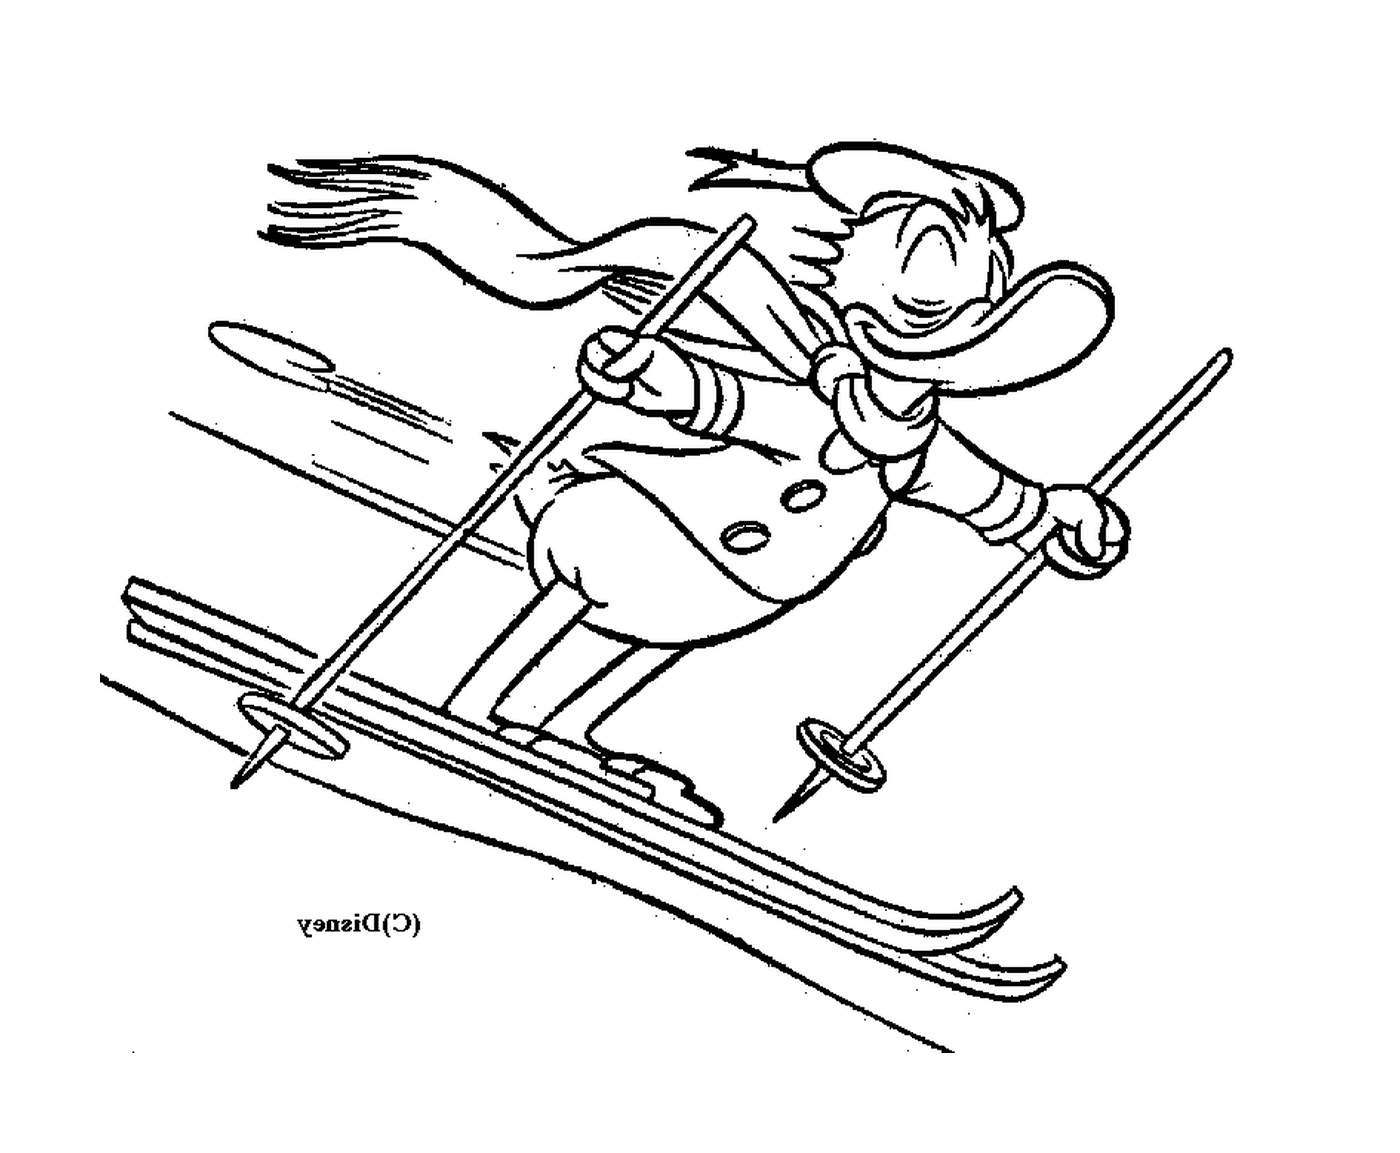  Donald descansa las pistas de esquí con facilidad 